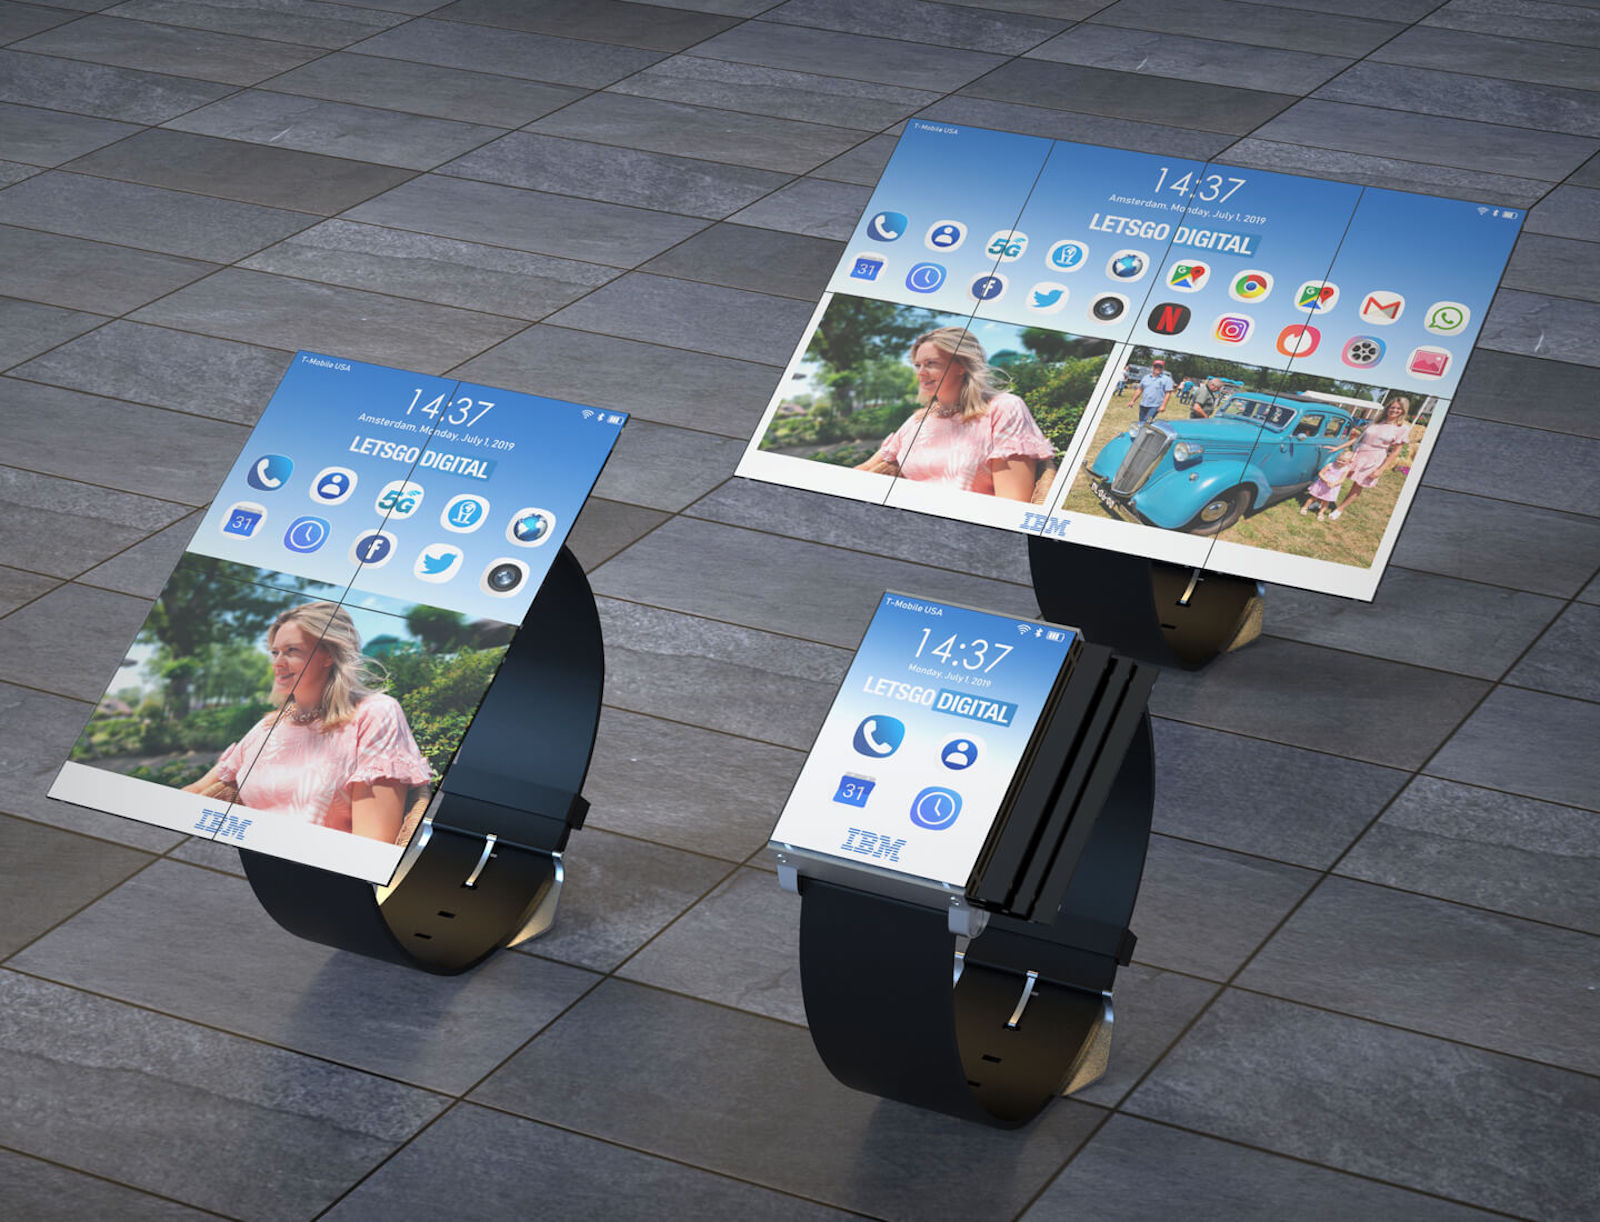 Et voici la montre 3-en-1 qui peut se transformer en smartphone ou en tablette grâce à de petits panneaux Oled. © IBM